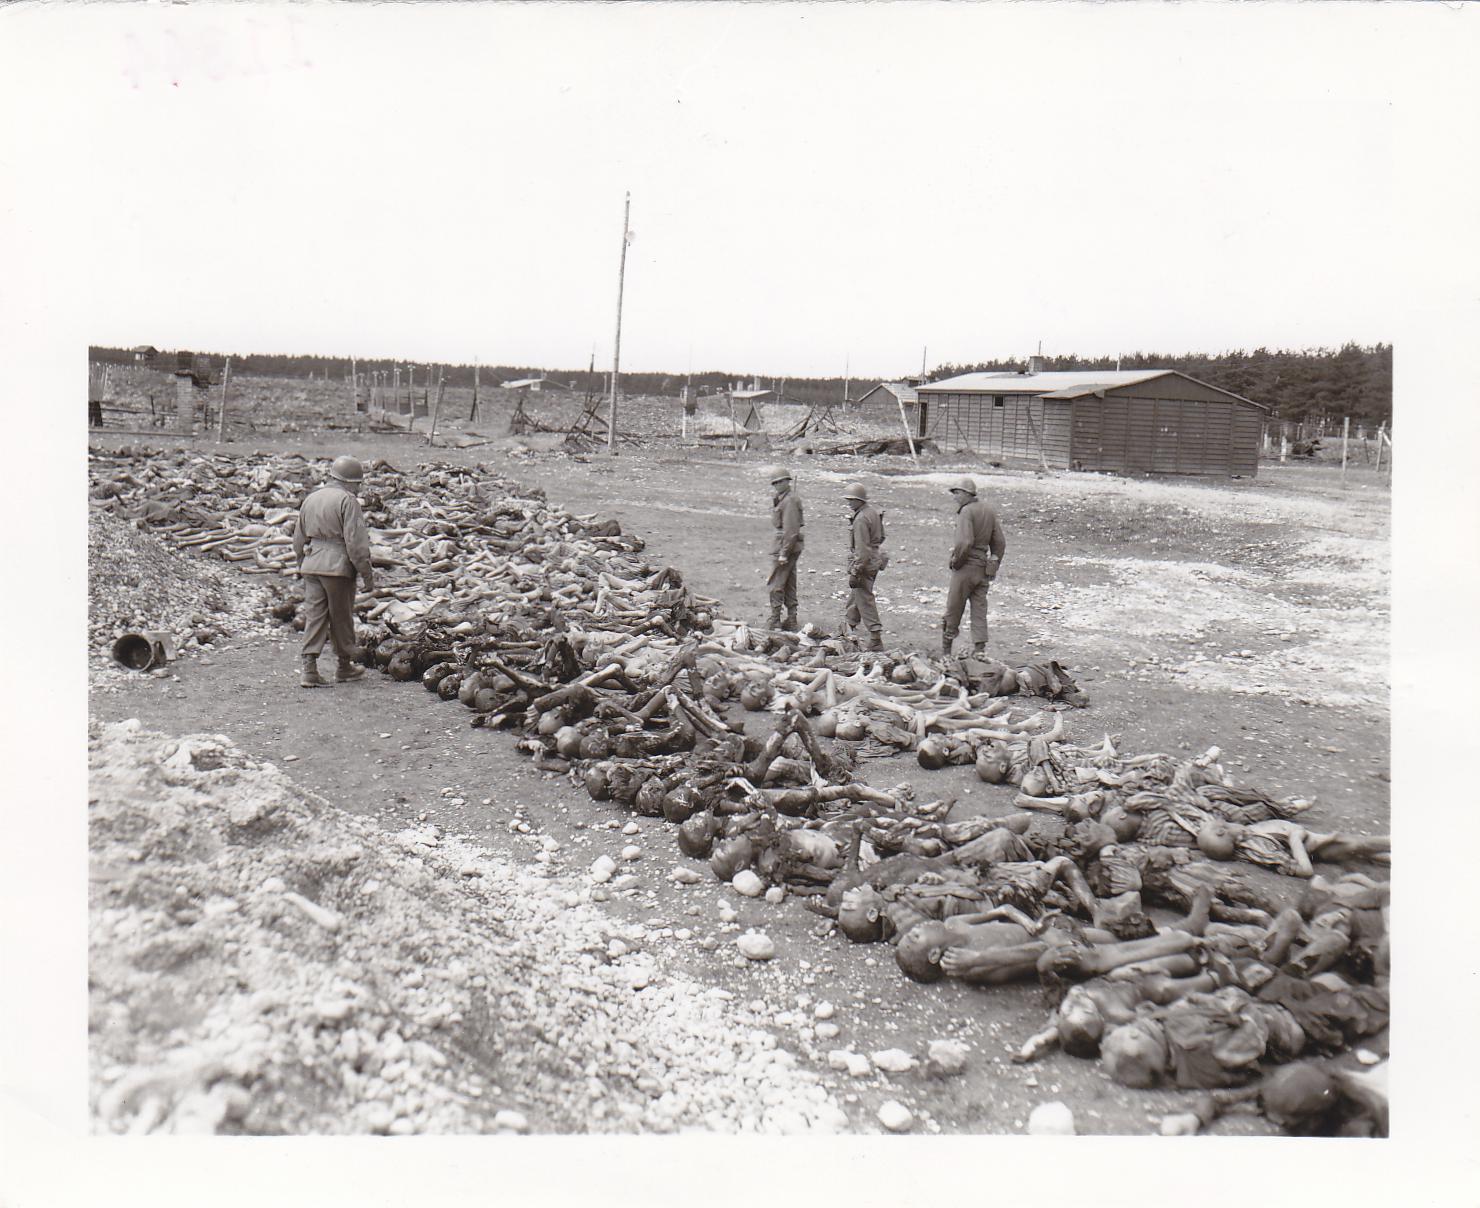 Landsberg, sottocampo di Dachau, 30 aprile 1945: soldati americani davanti a centinaia di cadaveri